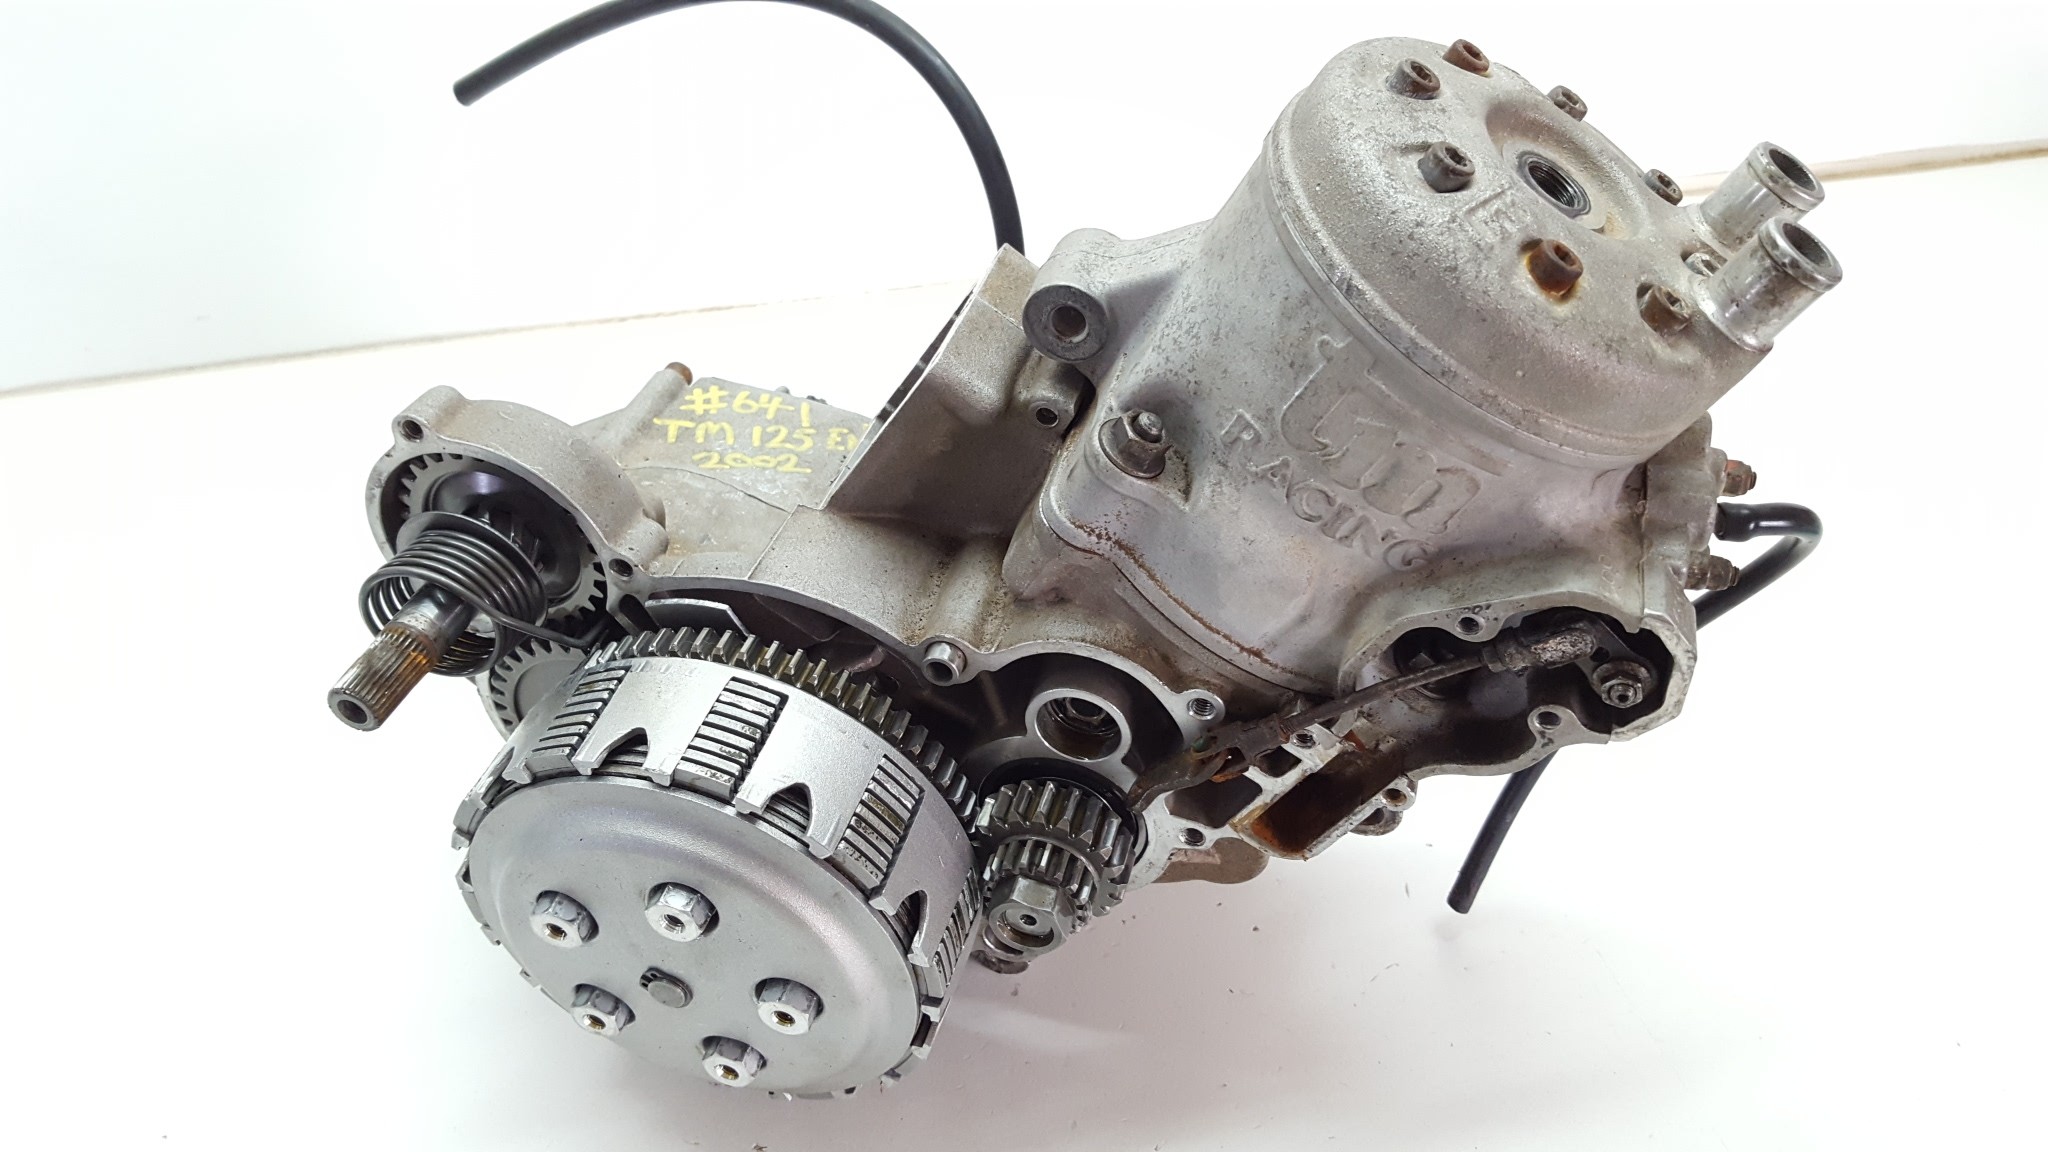 Motor Engine TM Racing 125 EN 2002 Cylinder Gearbox Cases Crank Head